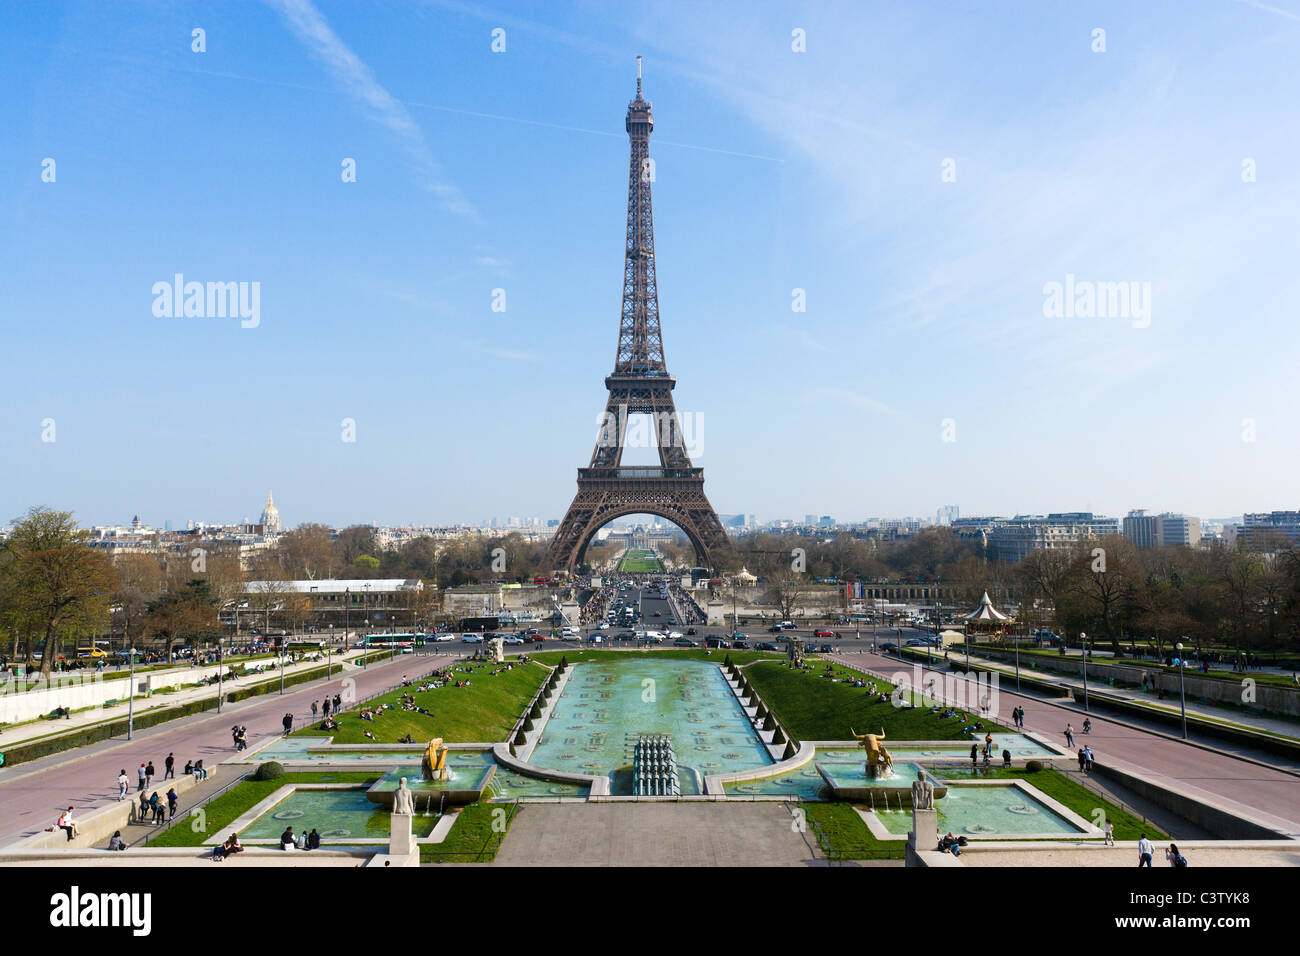 Der Eiffel-Turm auf dem Champ de Mars angesehen vom Trocadero, Paris, Frankreich Stockfoto